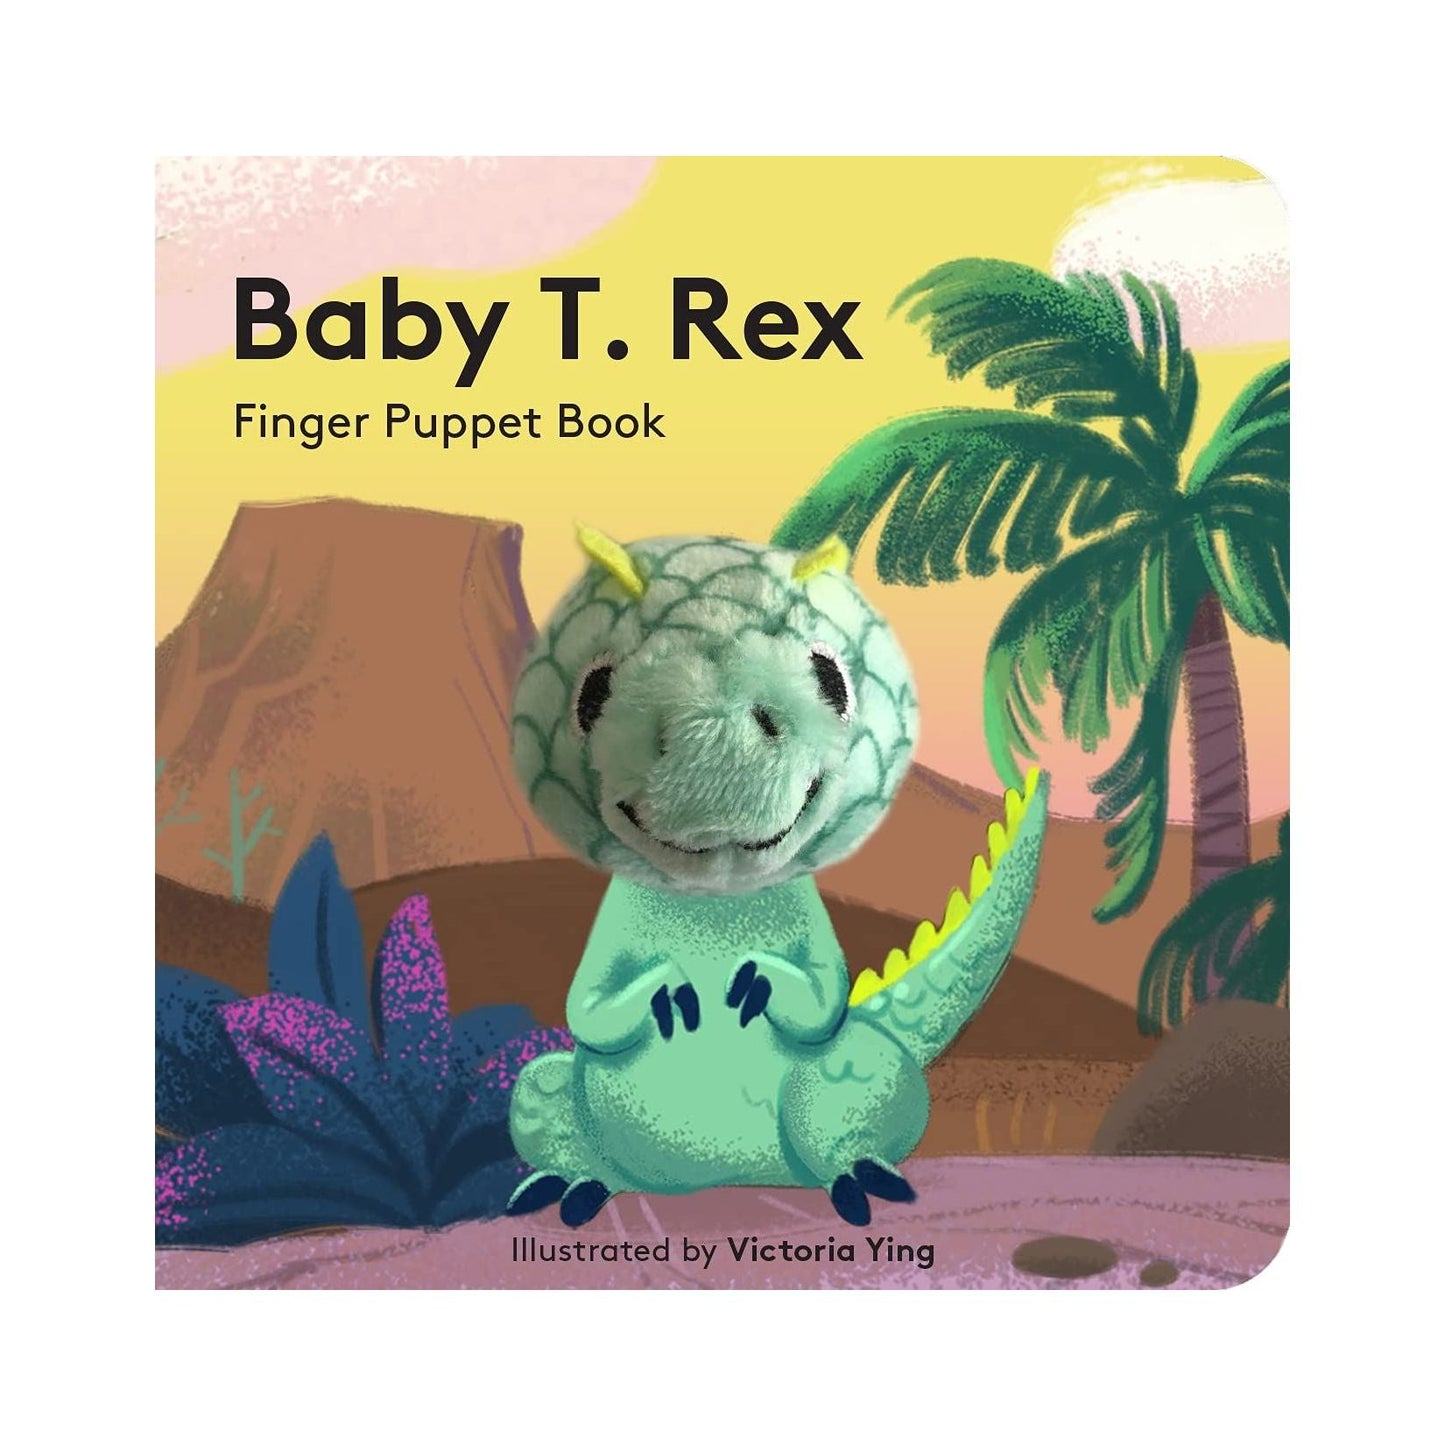 Baby T. rex Finger Puppet Book